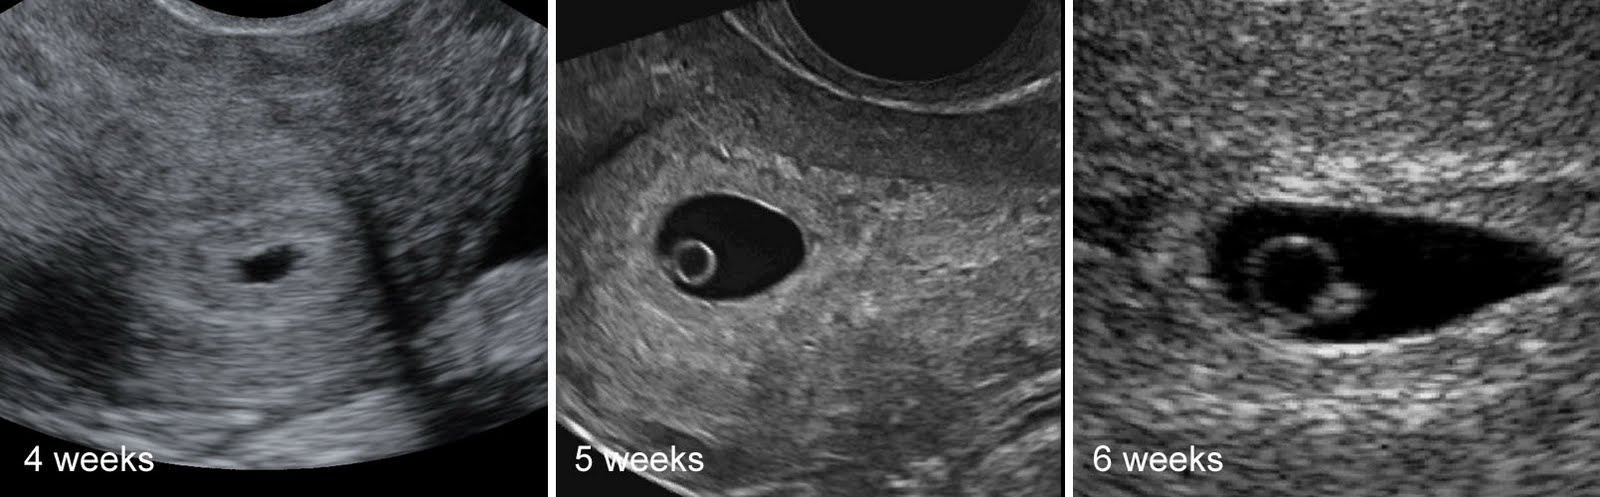 Забеременела 4 форум. 4 Эмбриональная неделя беременности УЗИ. Эмбрион на 5 неделе беременности УЗИ. Беременность 2-3 недели фото плода УЗИ. Эмбрион на 4 неделе беременности УЗИ.